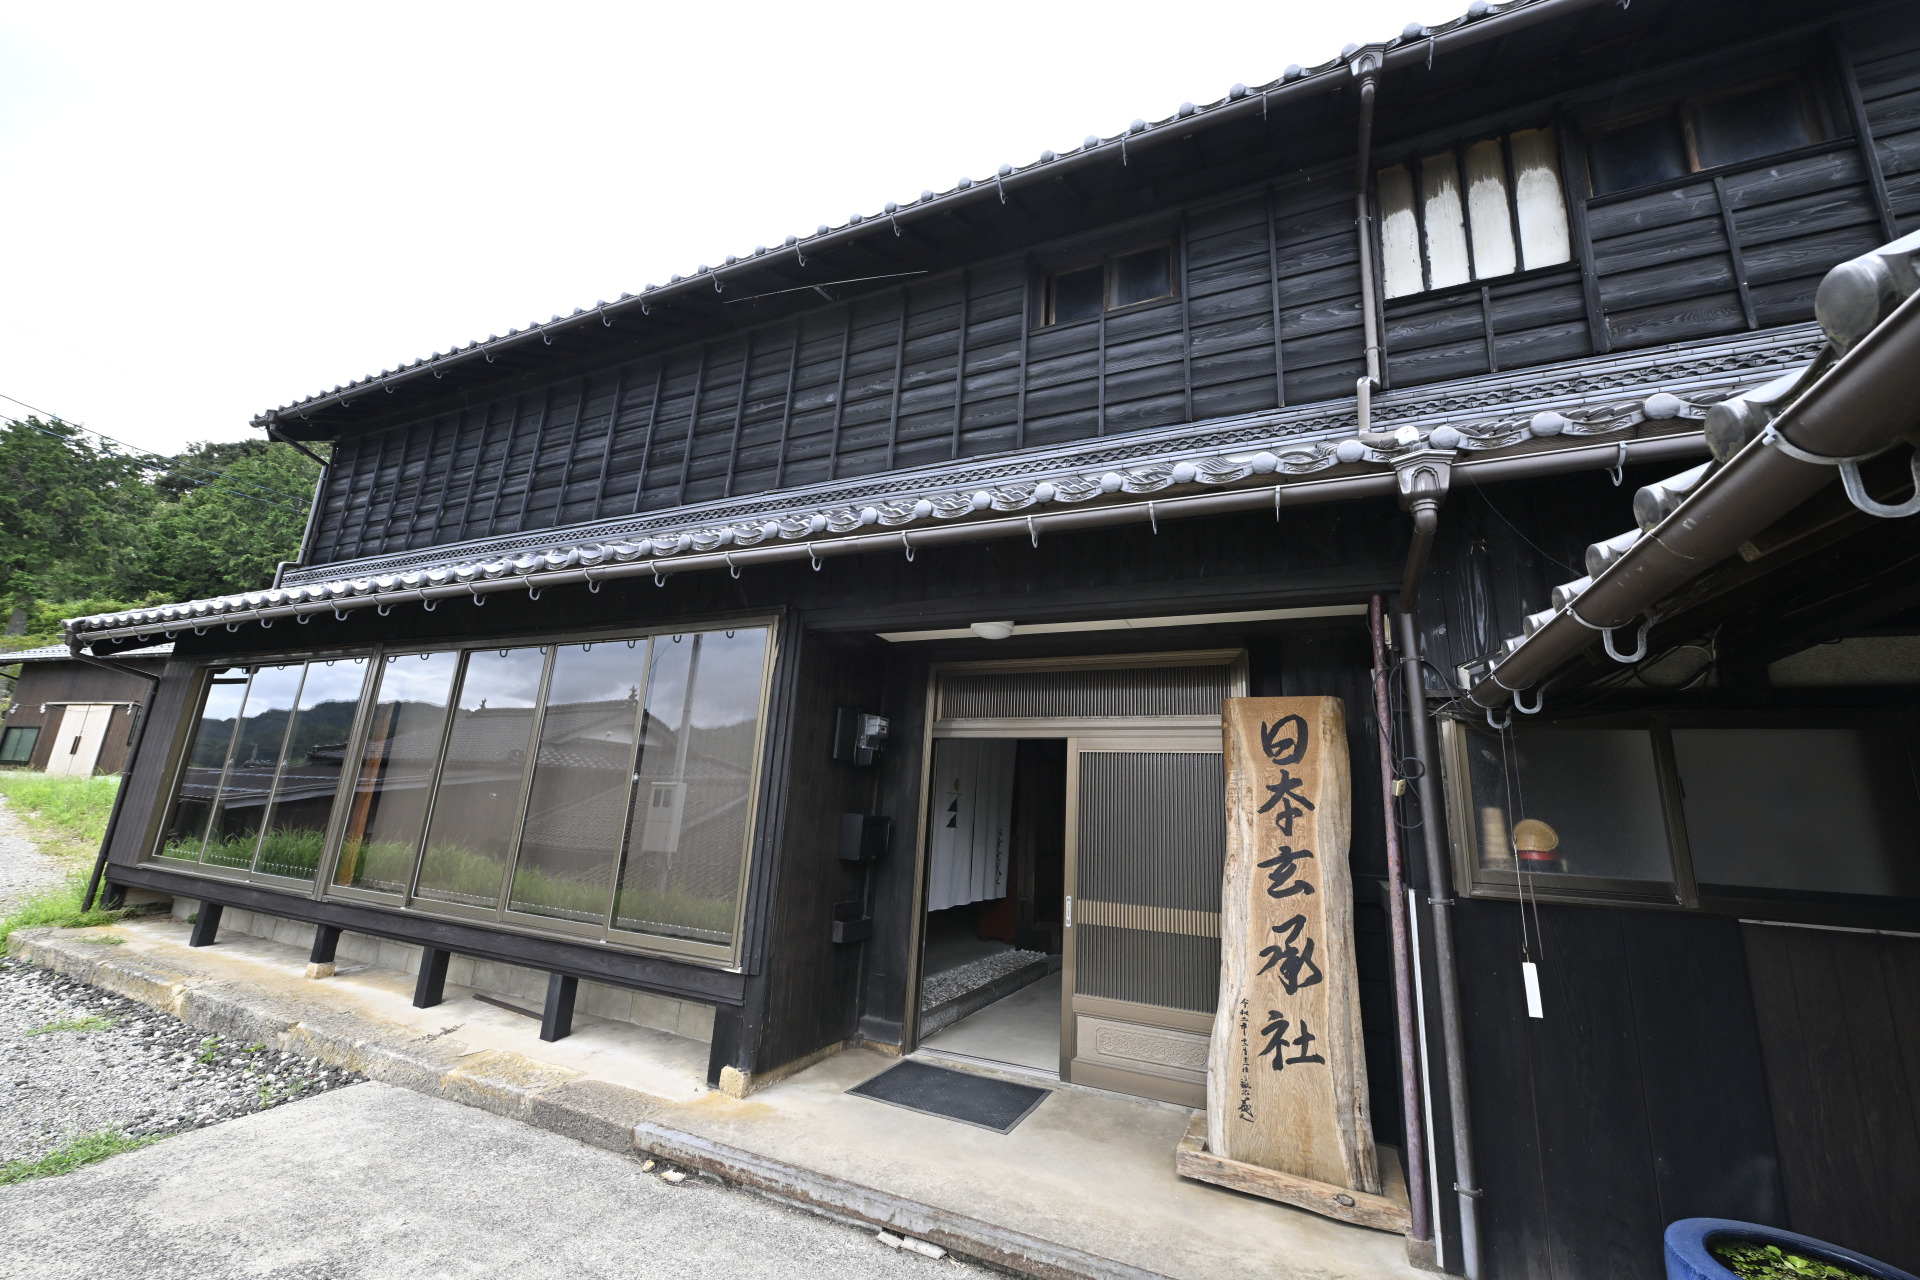 ■日本玄承社位于京都北部的京丹后市，可以预约参观。
